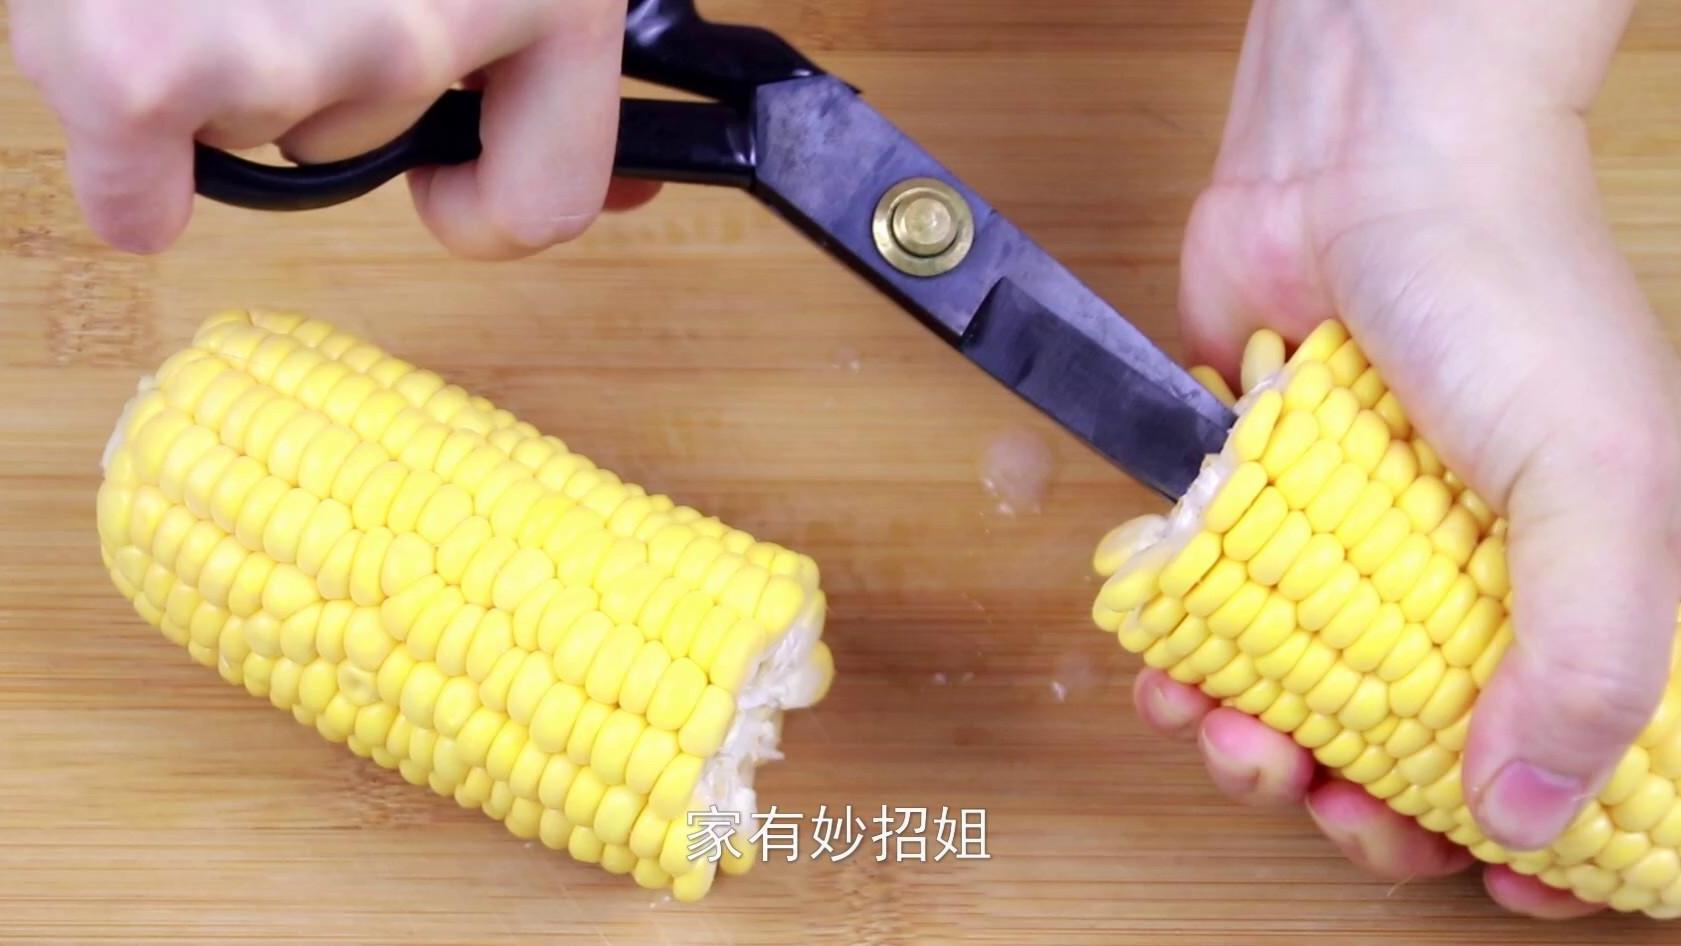 教你快速剥玉米粒的方法，只需一把剪刀，轻松剥出一大盘的玉米粒